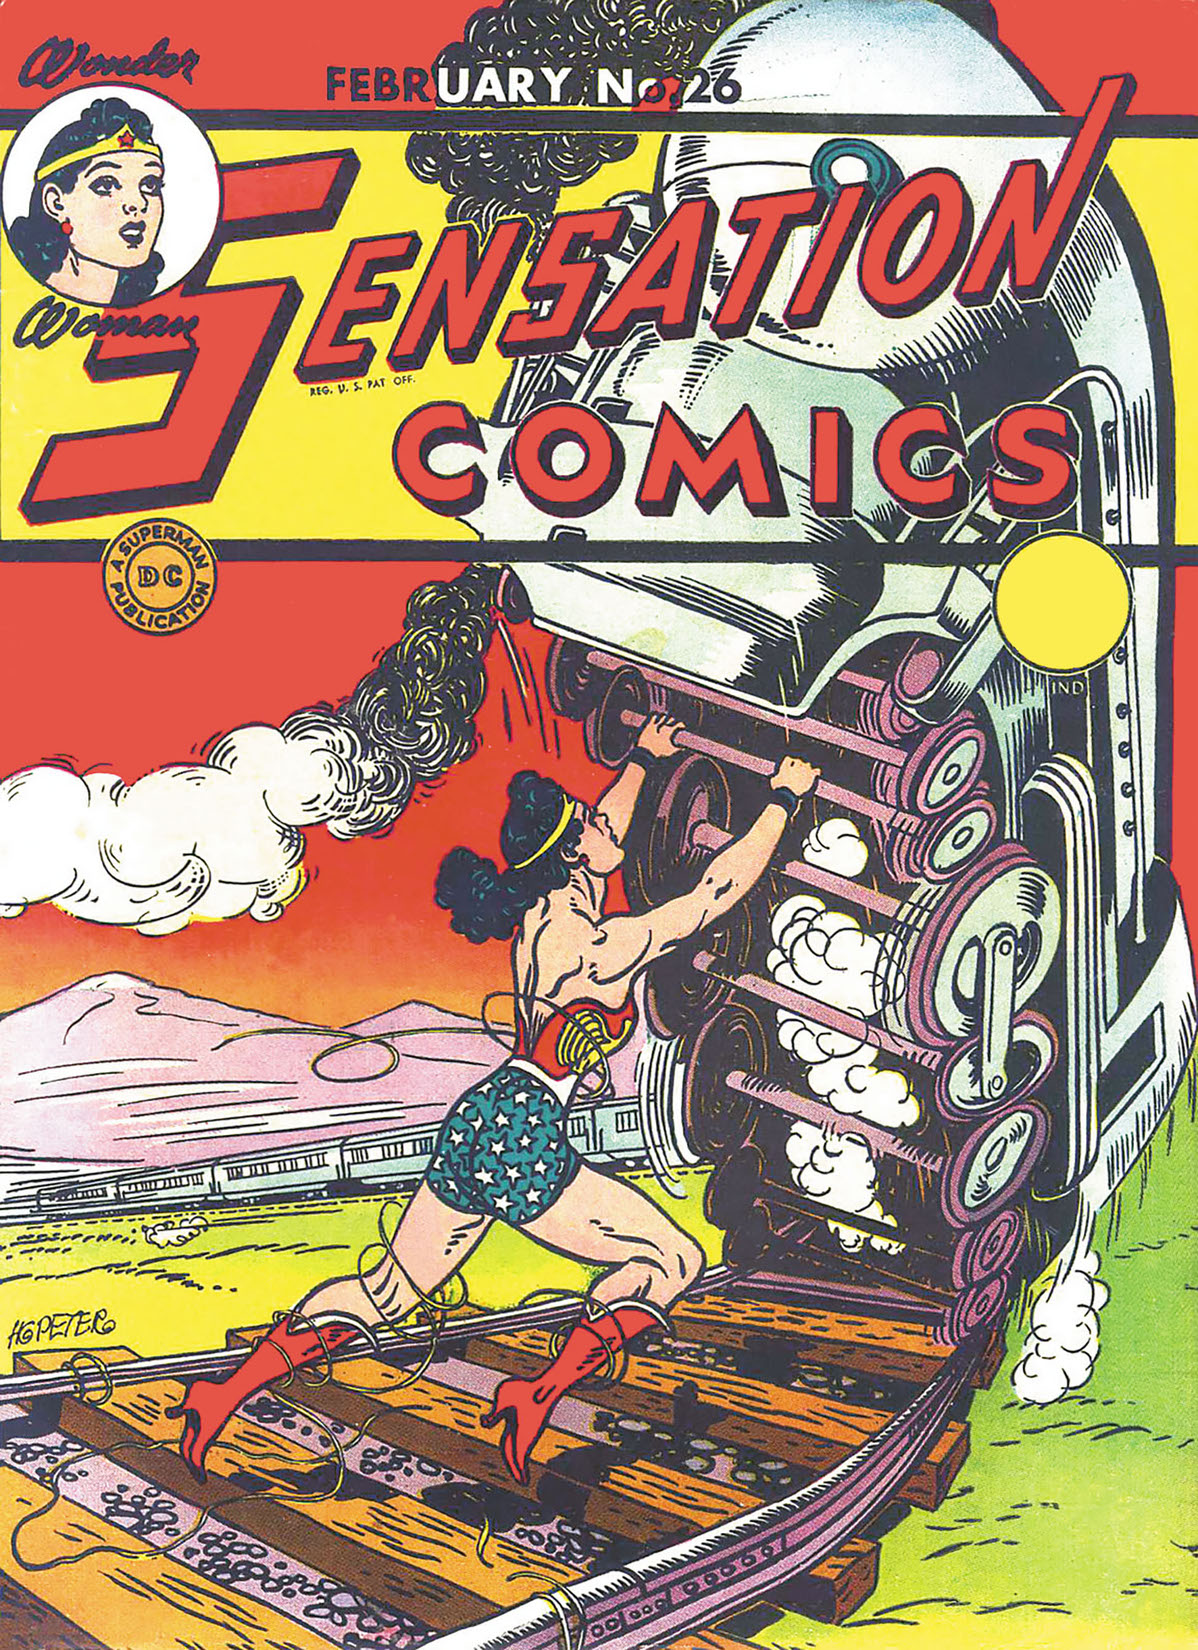 Sensation Comics #26 preview images